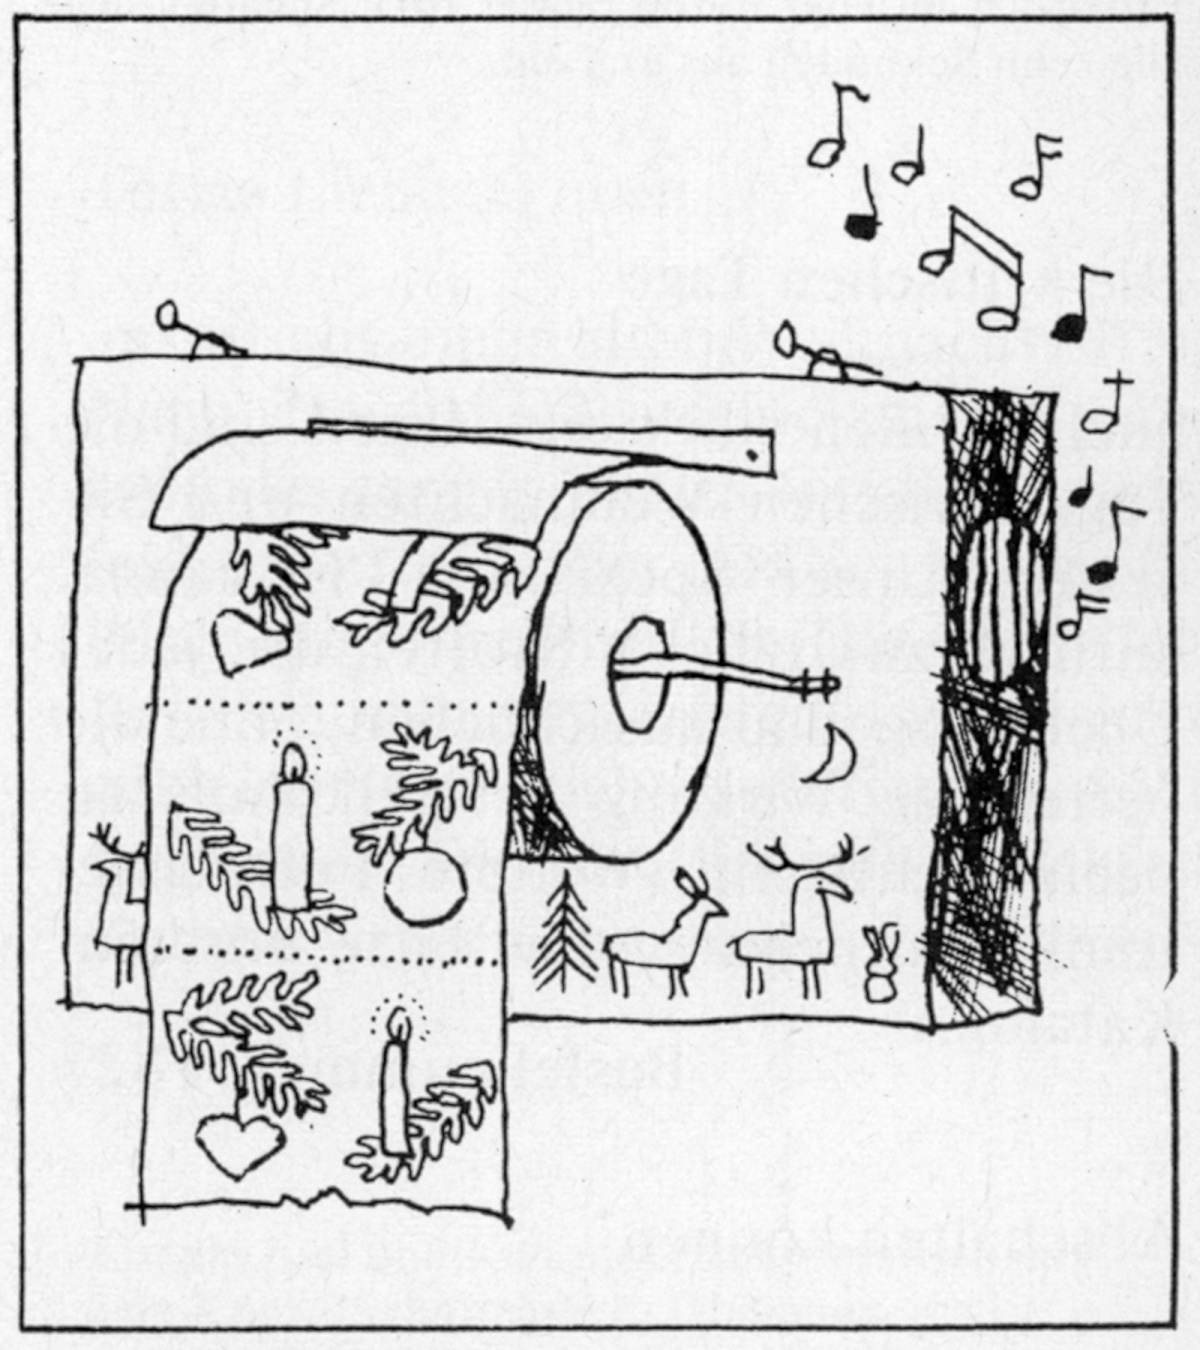 Bestellnummer 263 b, Bild: Weihnachtlich allerorts. Bei Abriß eines oder mehrerer festlich gestalteter Papiere erklingt ein Glockenspiel(Handarbeit, Schwarzwälder Art)
Zeichnung: F. K. Wächter.